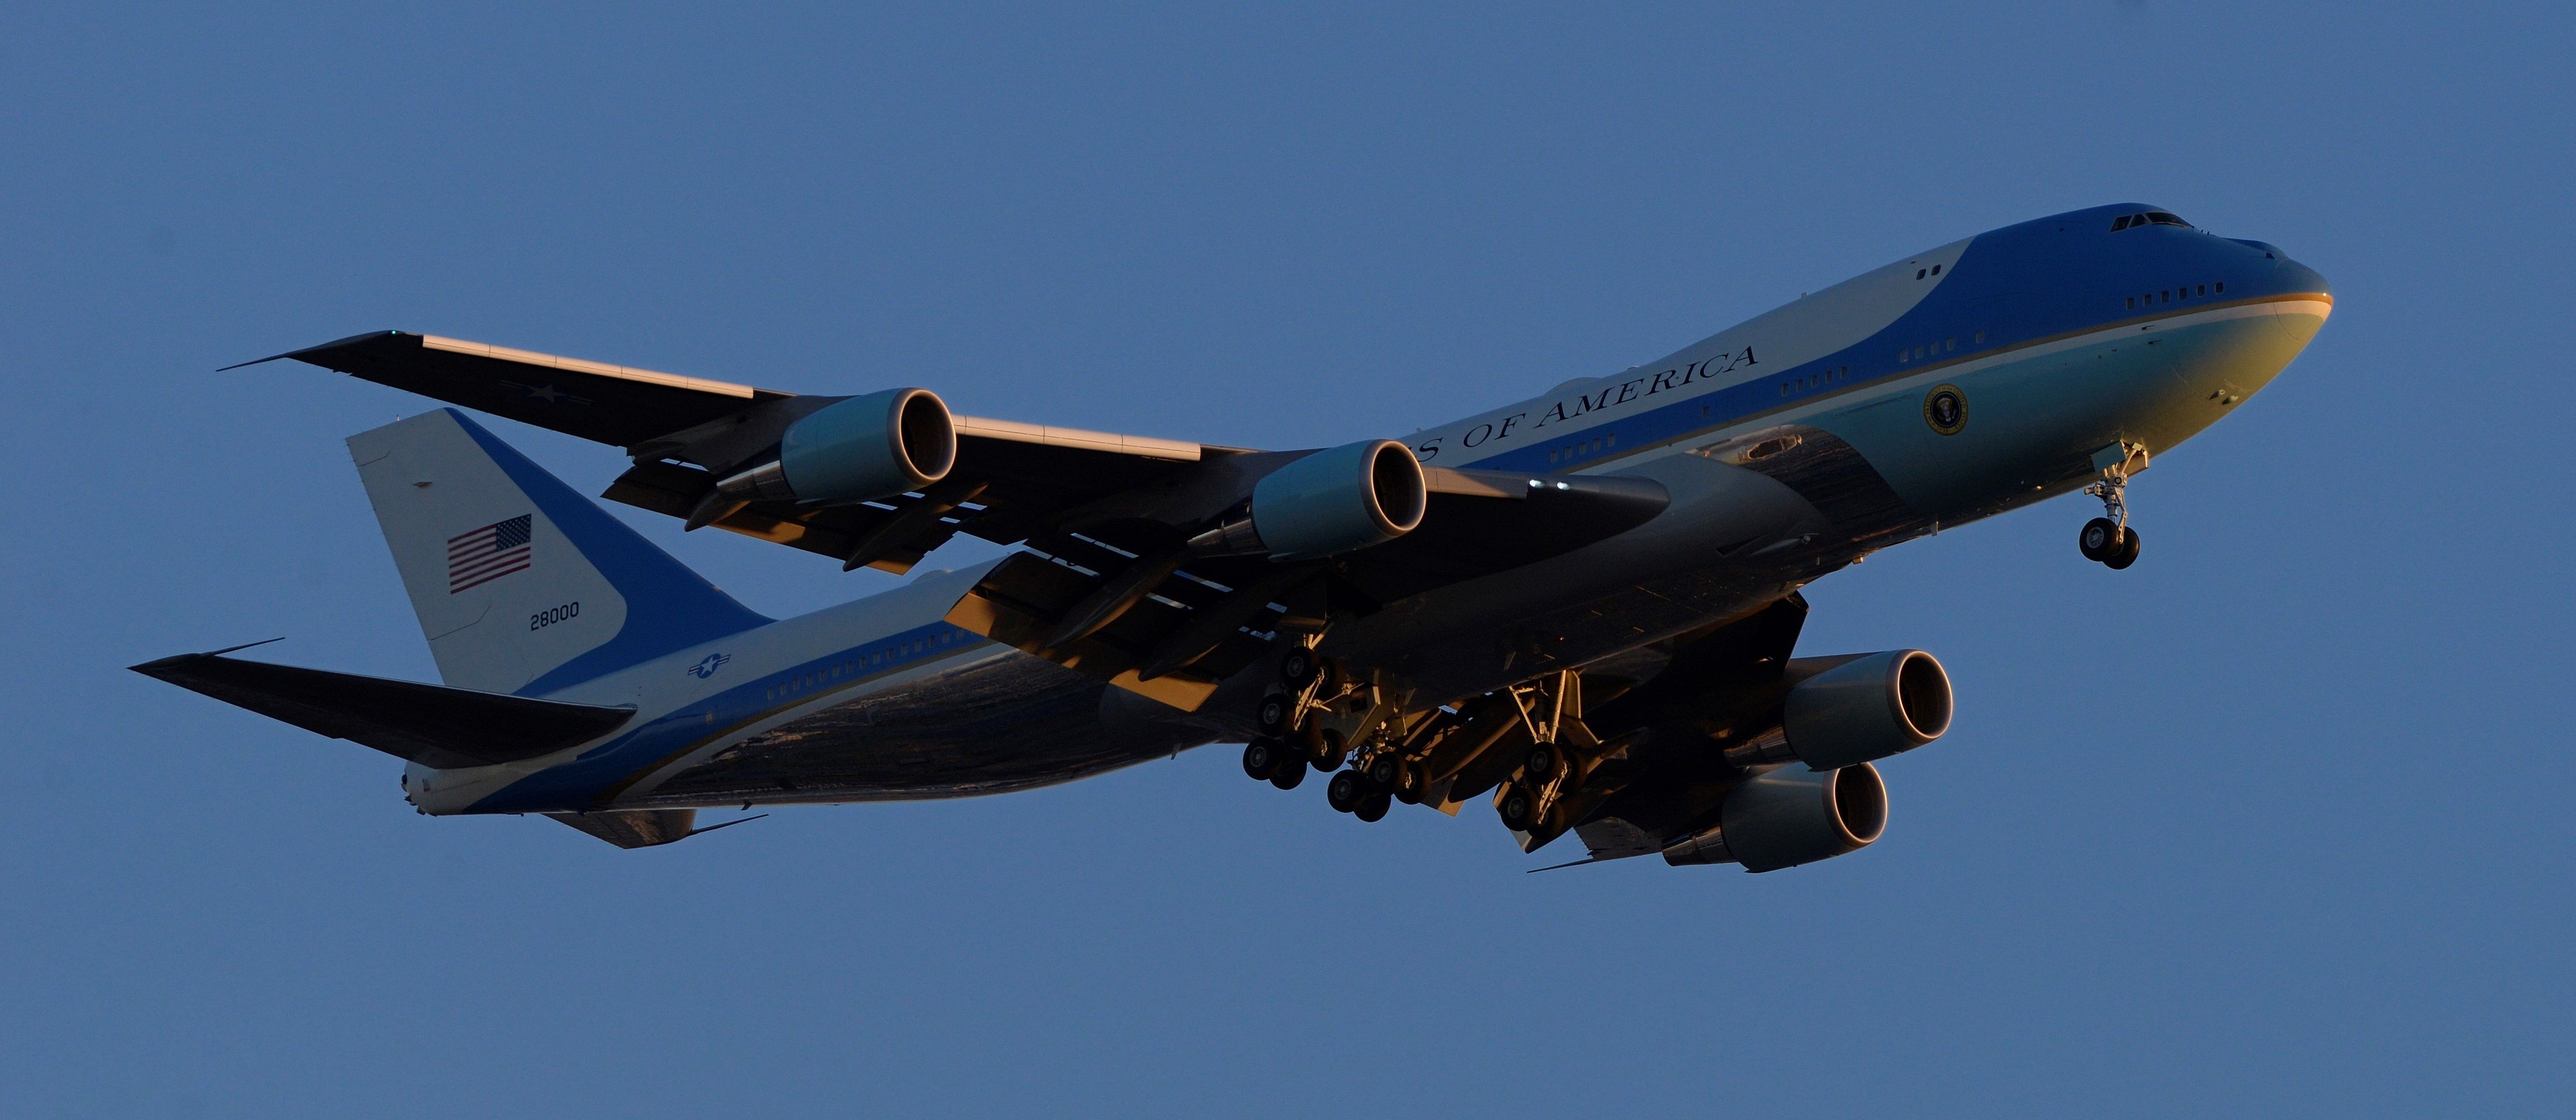 Boeing 747-200 (N28000) - Air Force One phoenix sky harbor international airport 19FEB20